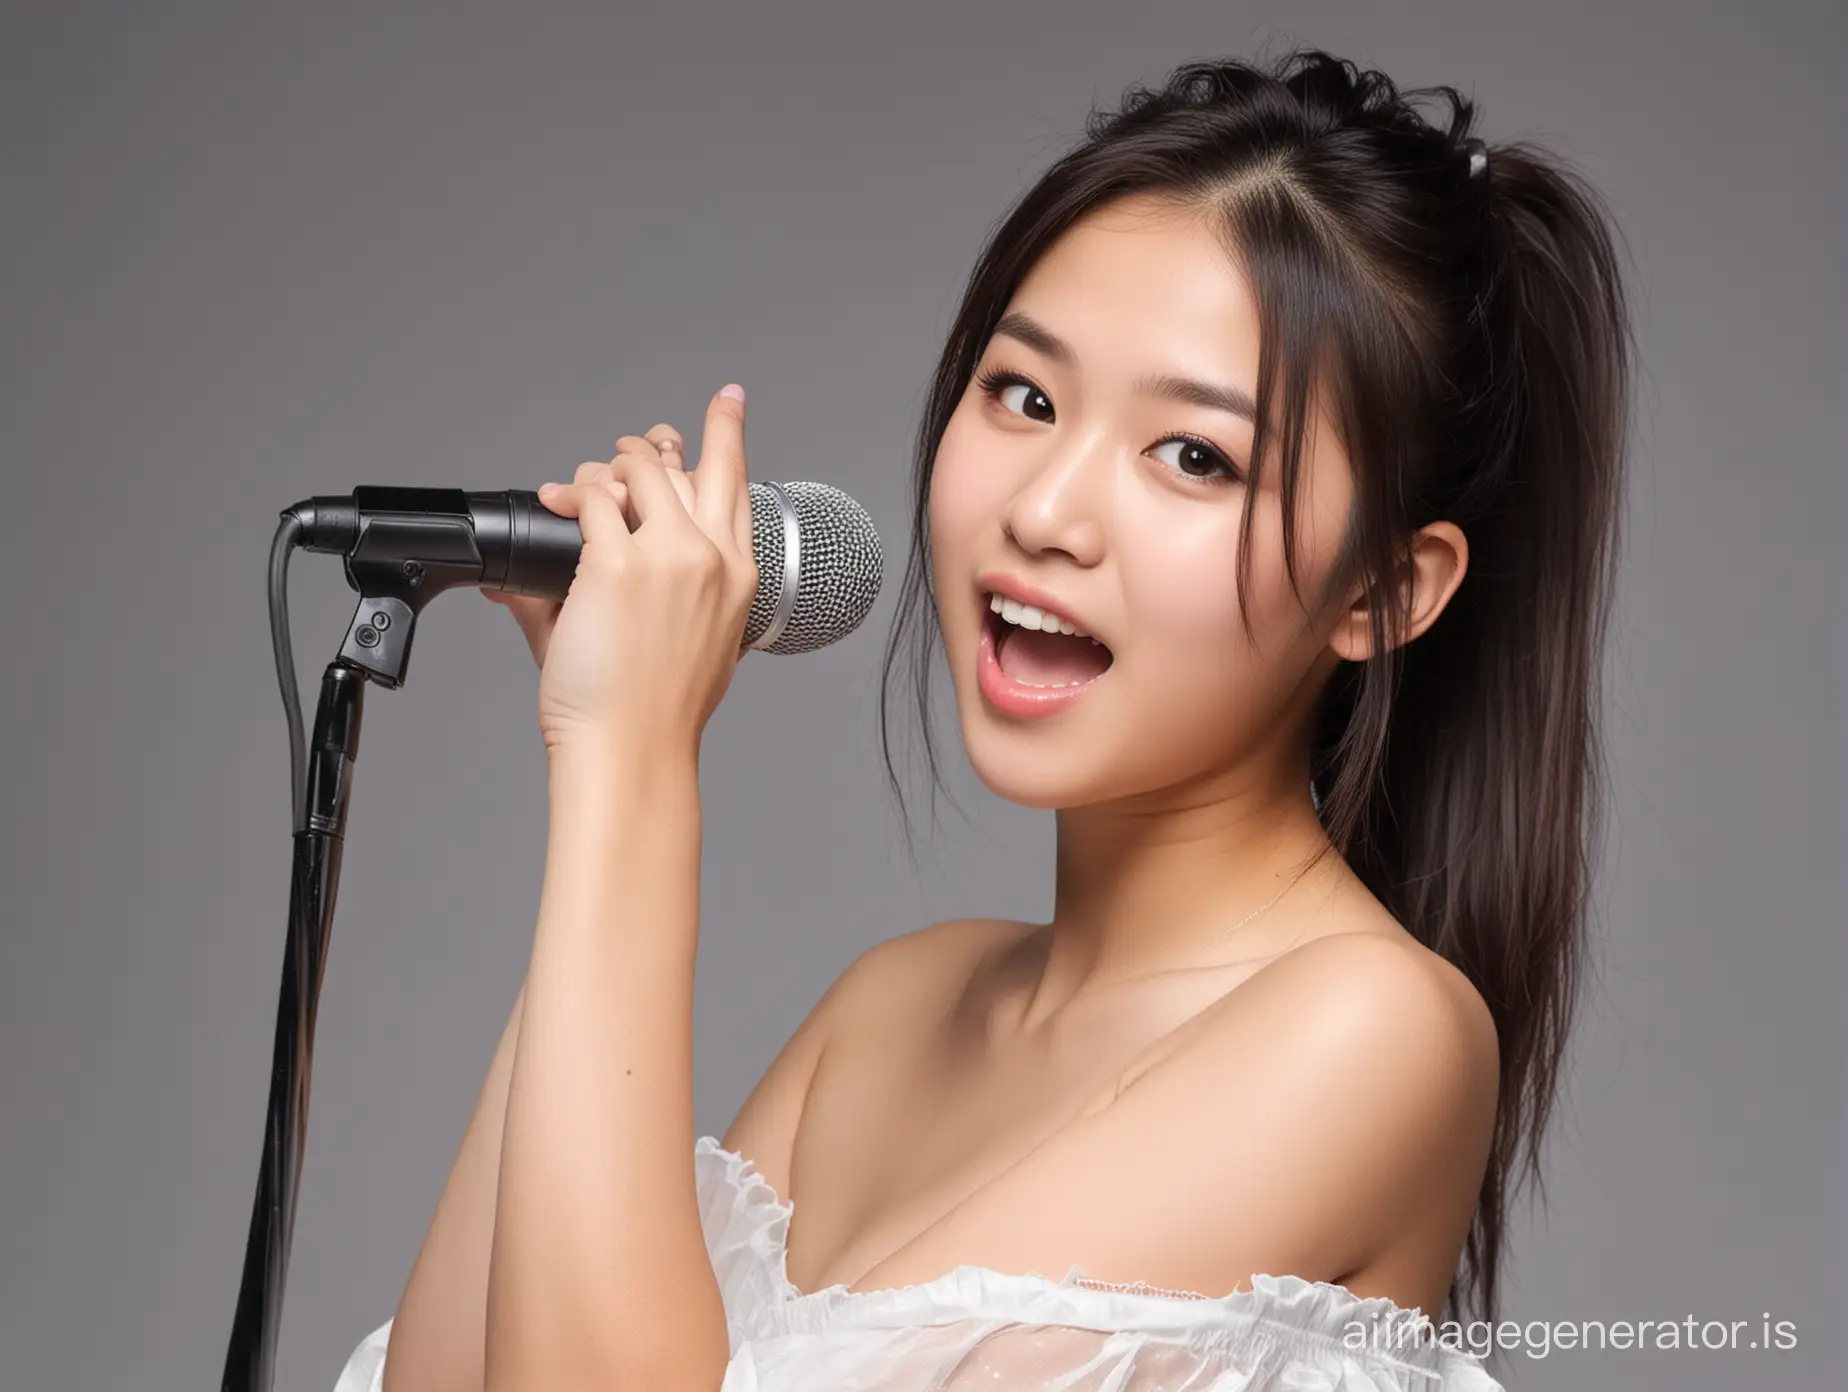 손으로 마이크 잡고 노래하는  아시아 18세 여성 가수(정상적인 손가락 표현이 중요), 허리 아래로 옷을 벗은 모습